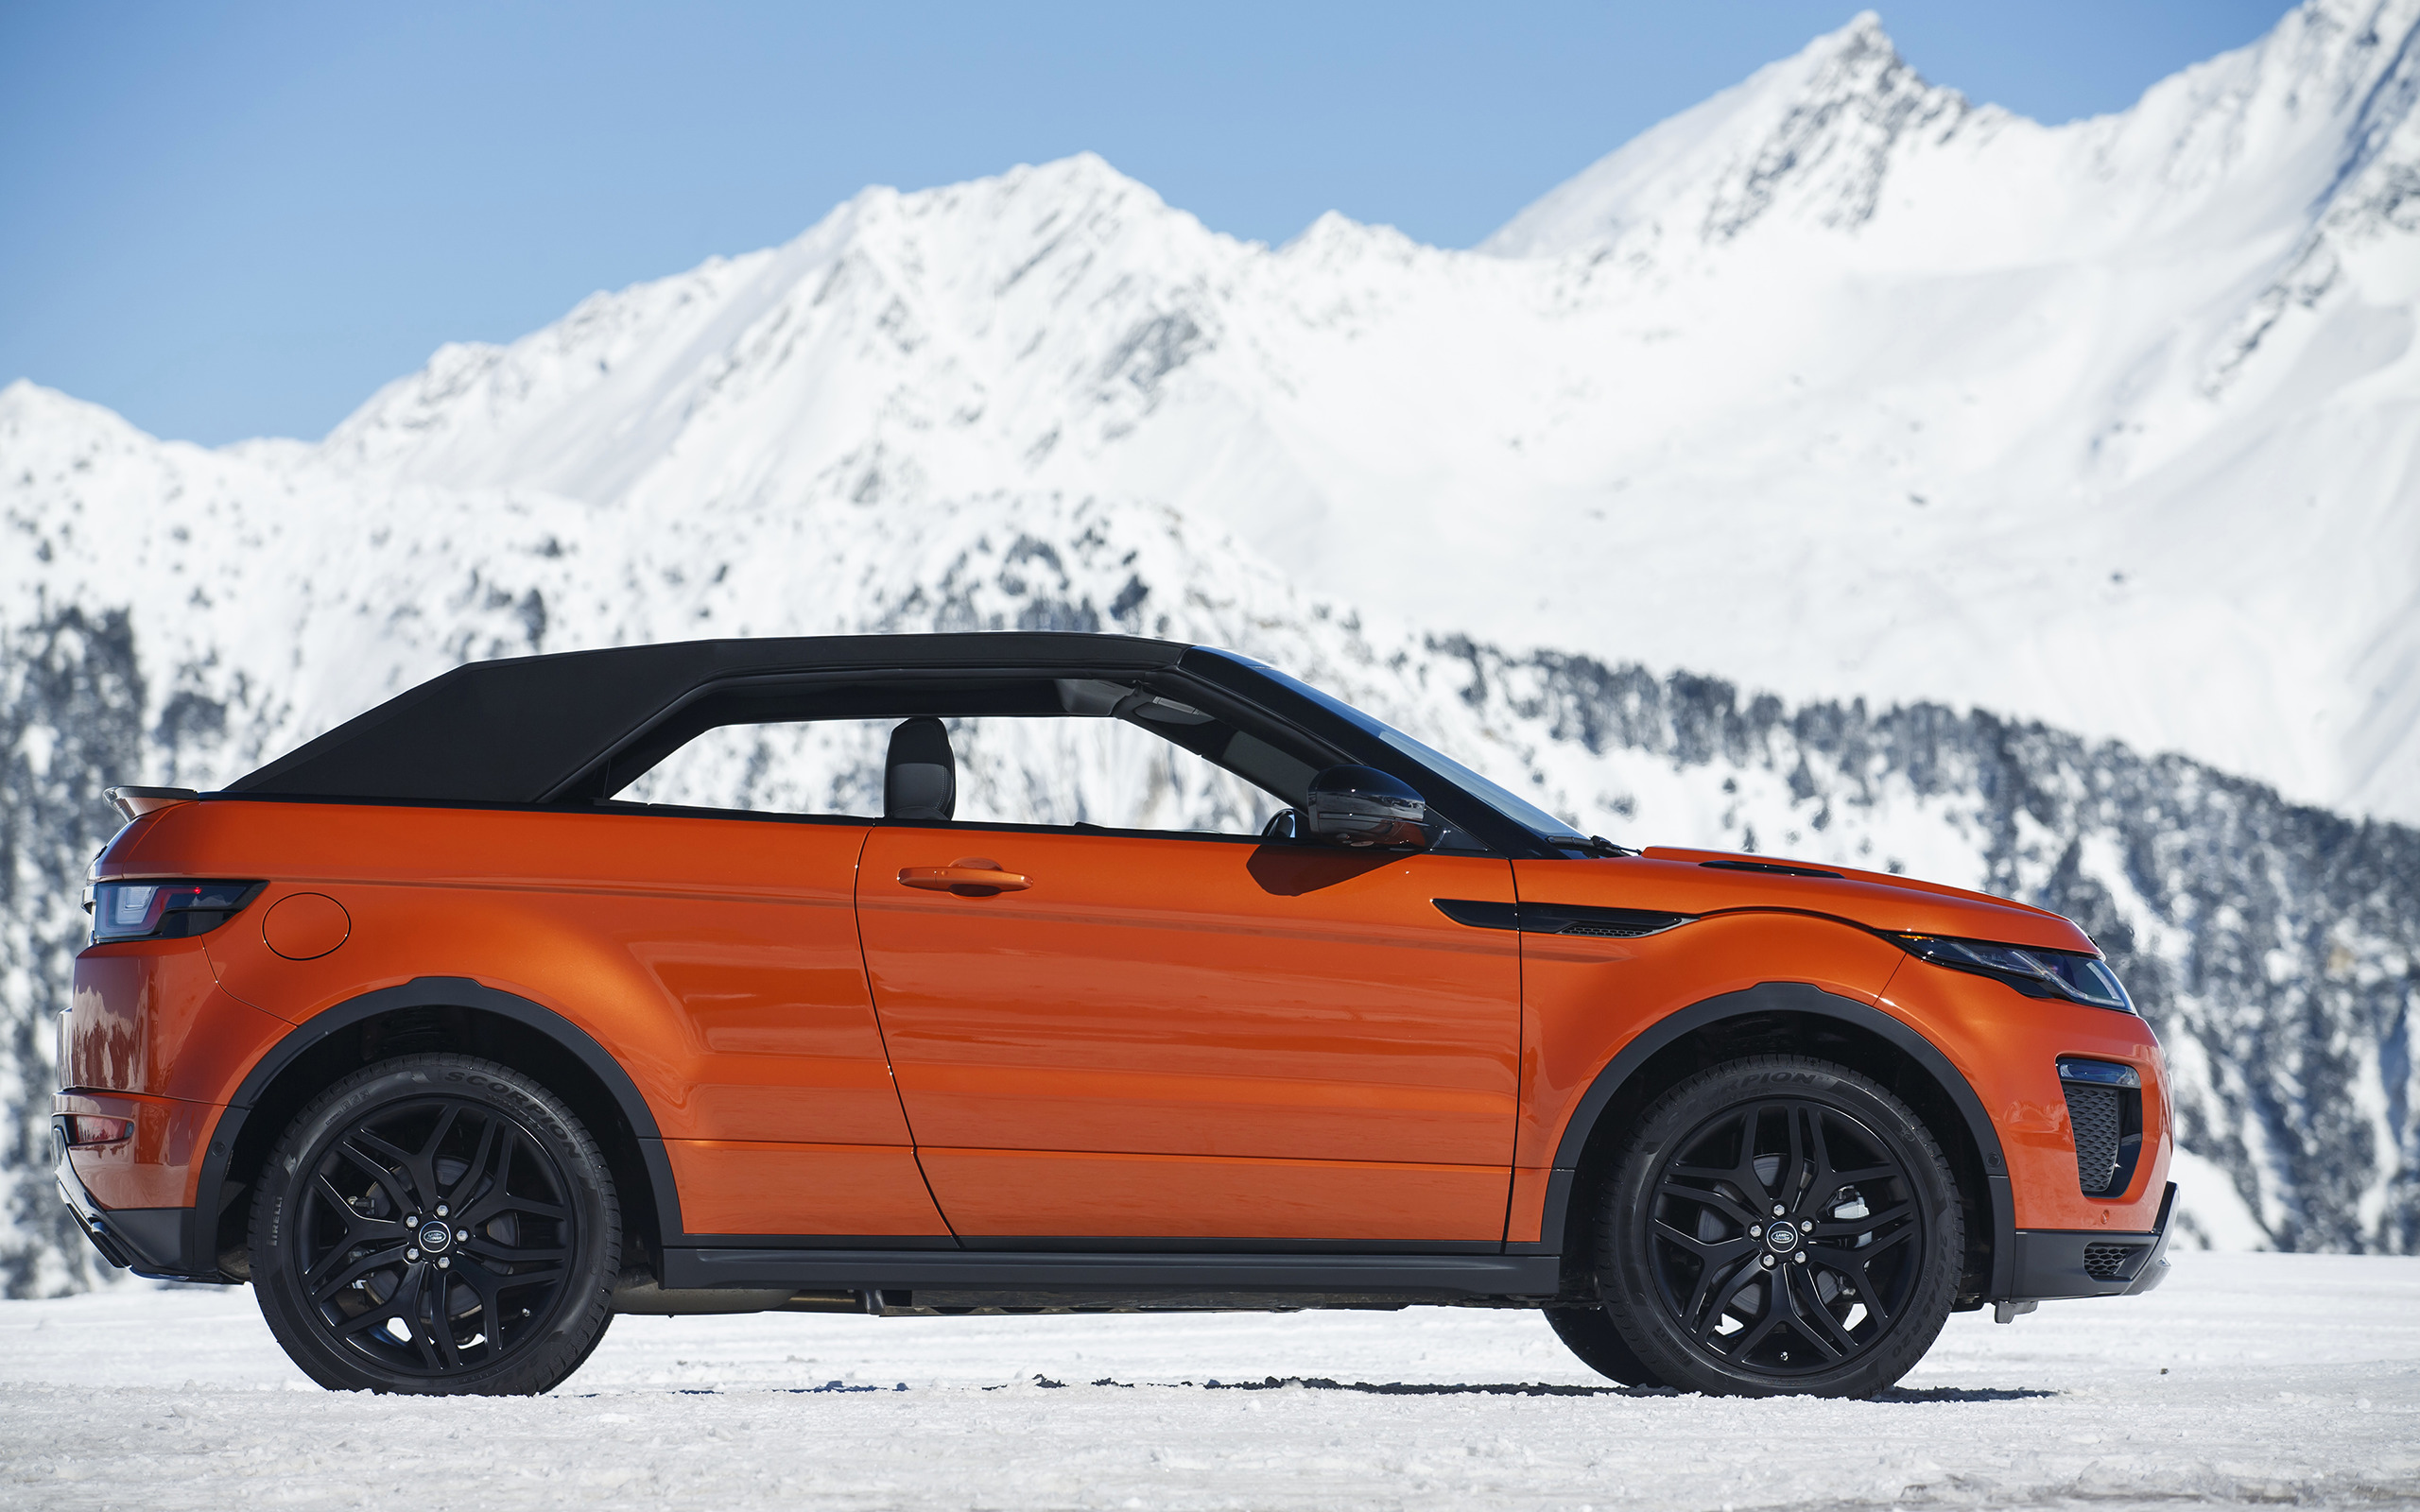 Range Rover Evoque, Convertible, Car, Vehicle, Snow, Mountains Wallpaper